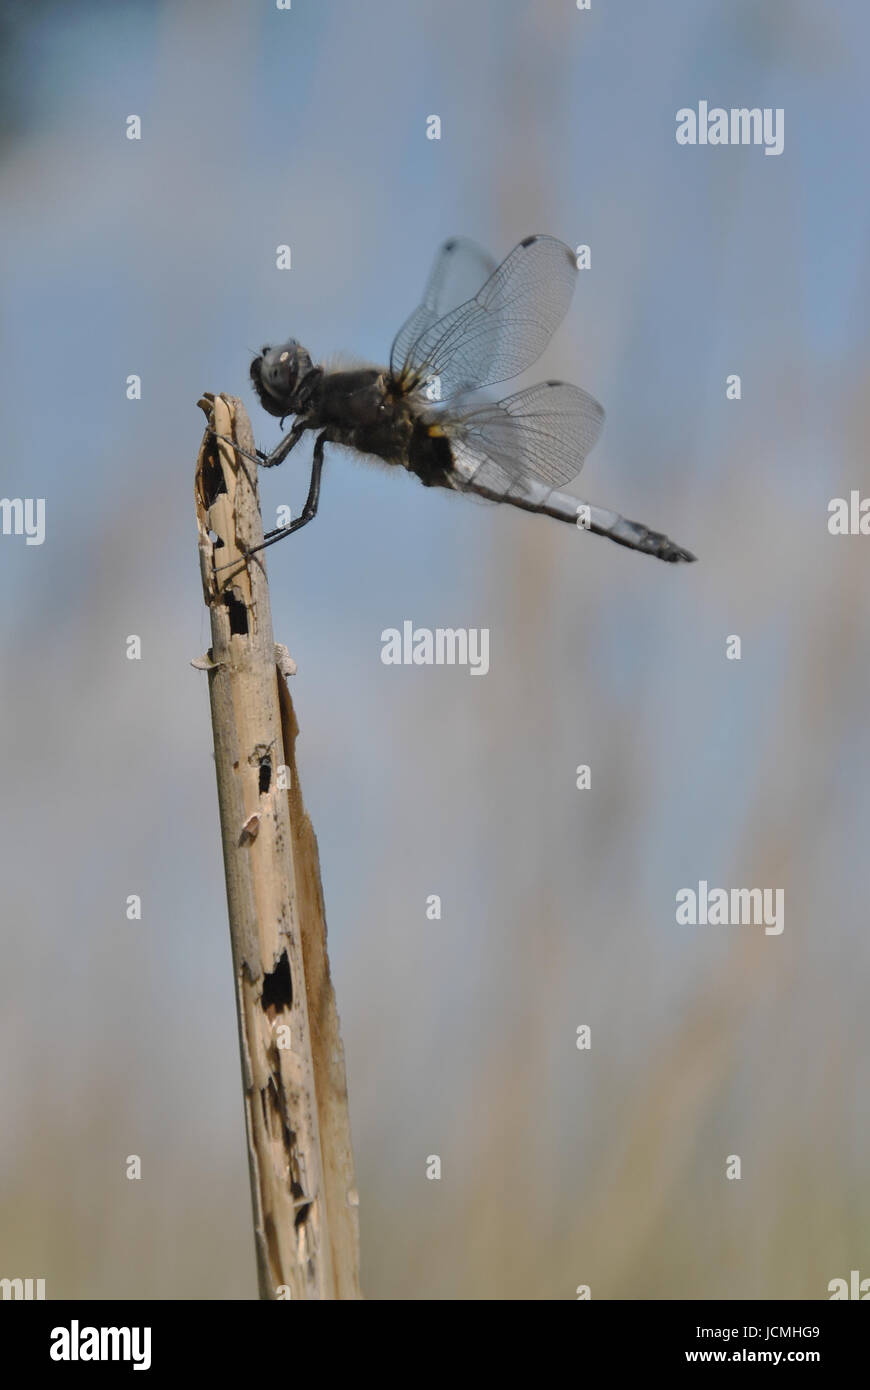 Photographie du gros plan d'une libellule (black-tailed skimmer) assis sur une tige de roseau Banque D'Images